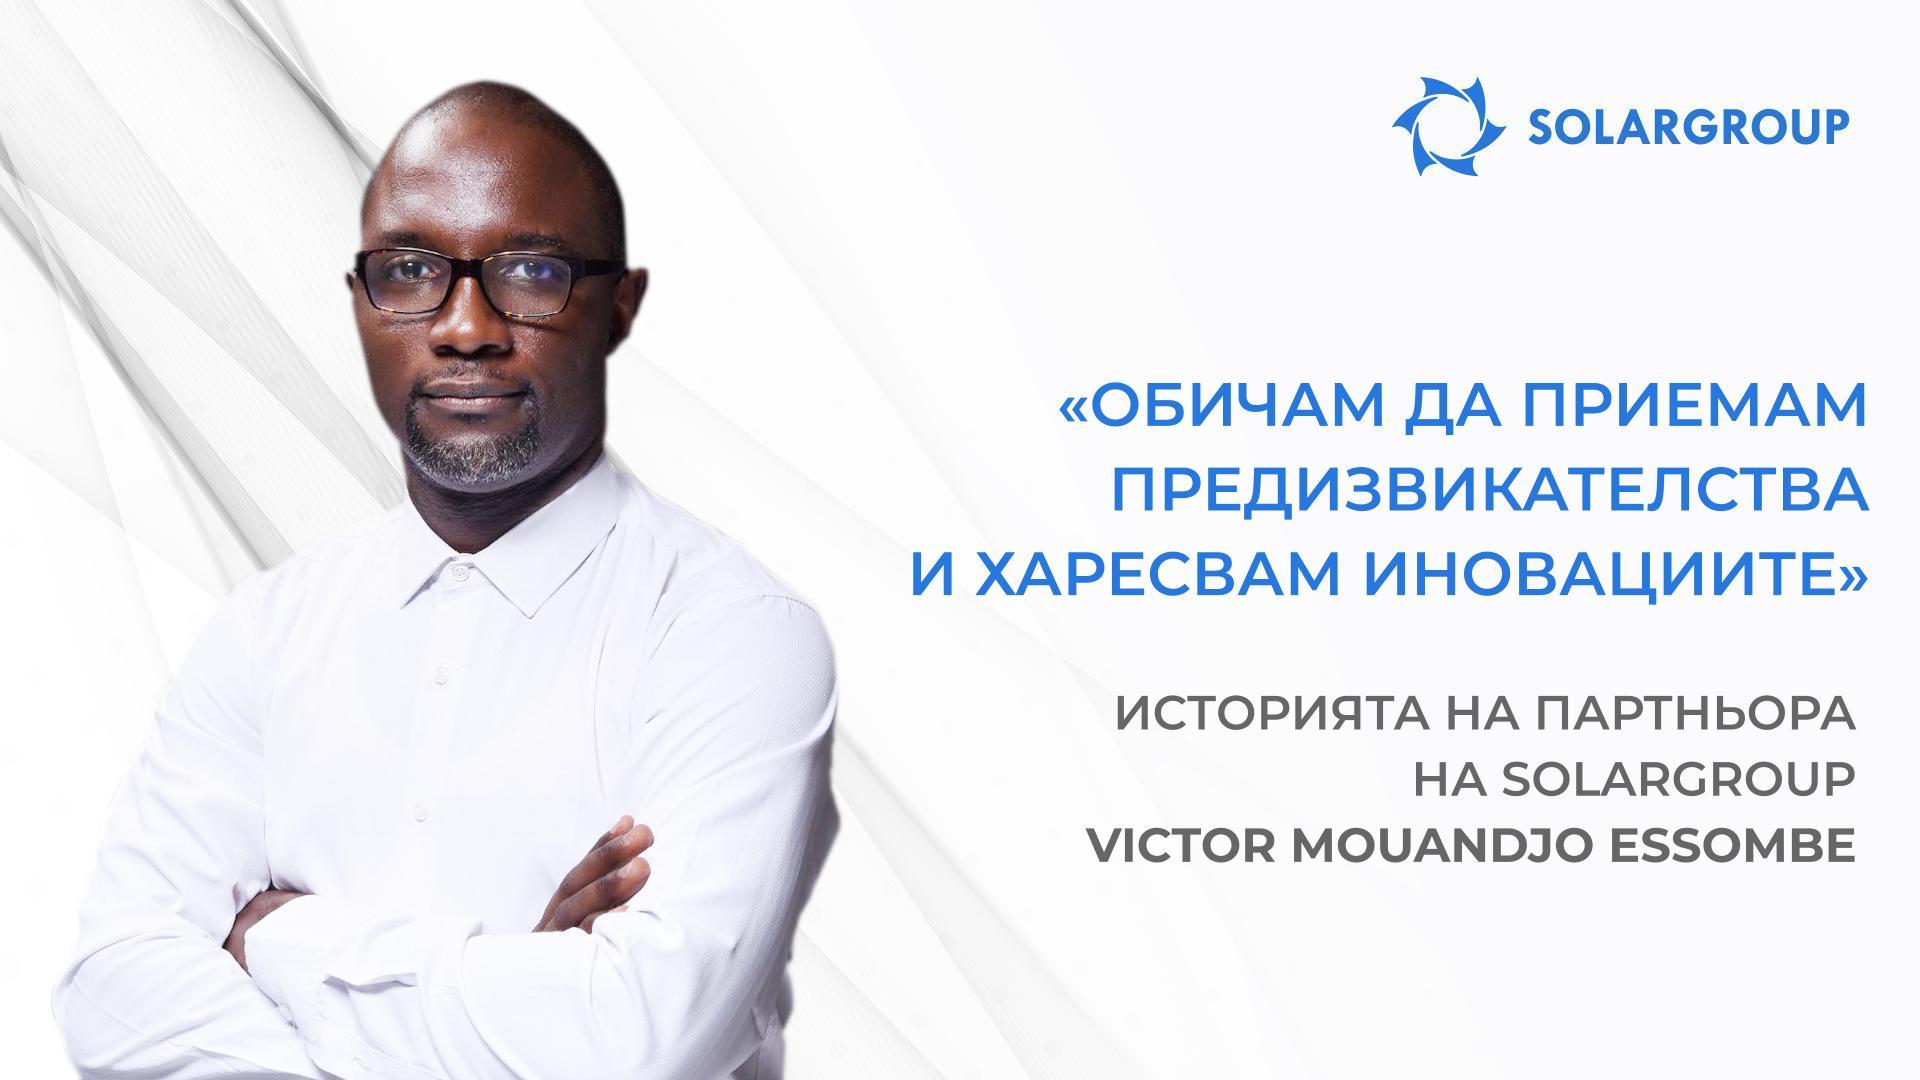 Аз и моят екип имаме големи планове! | Историята на партньора на SOLARGROUP Victor Mouandjo Essombe